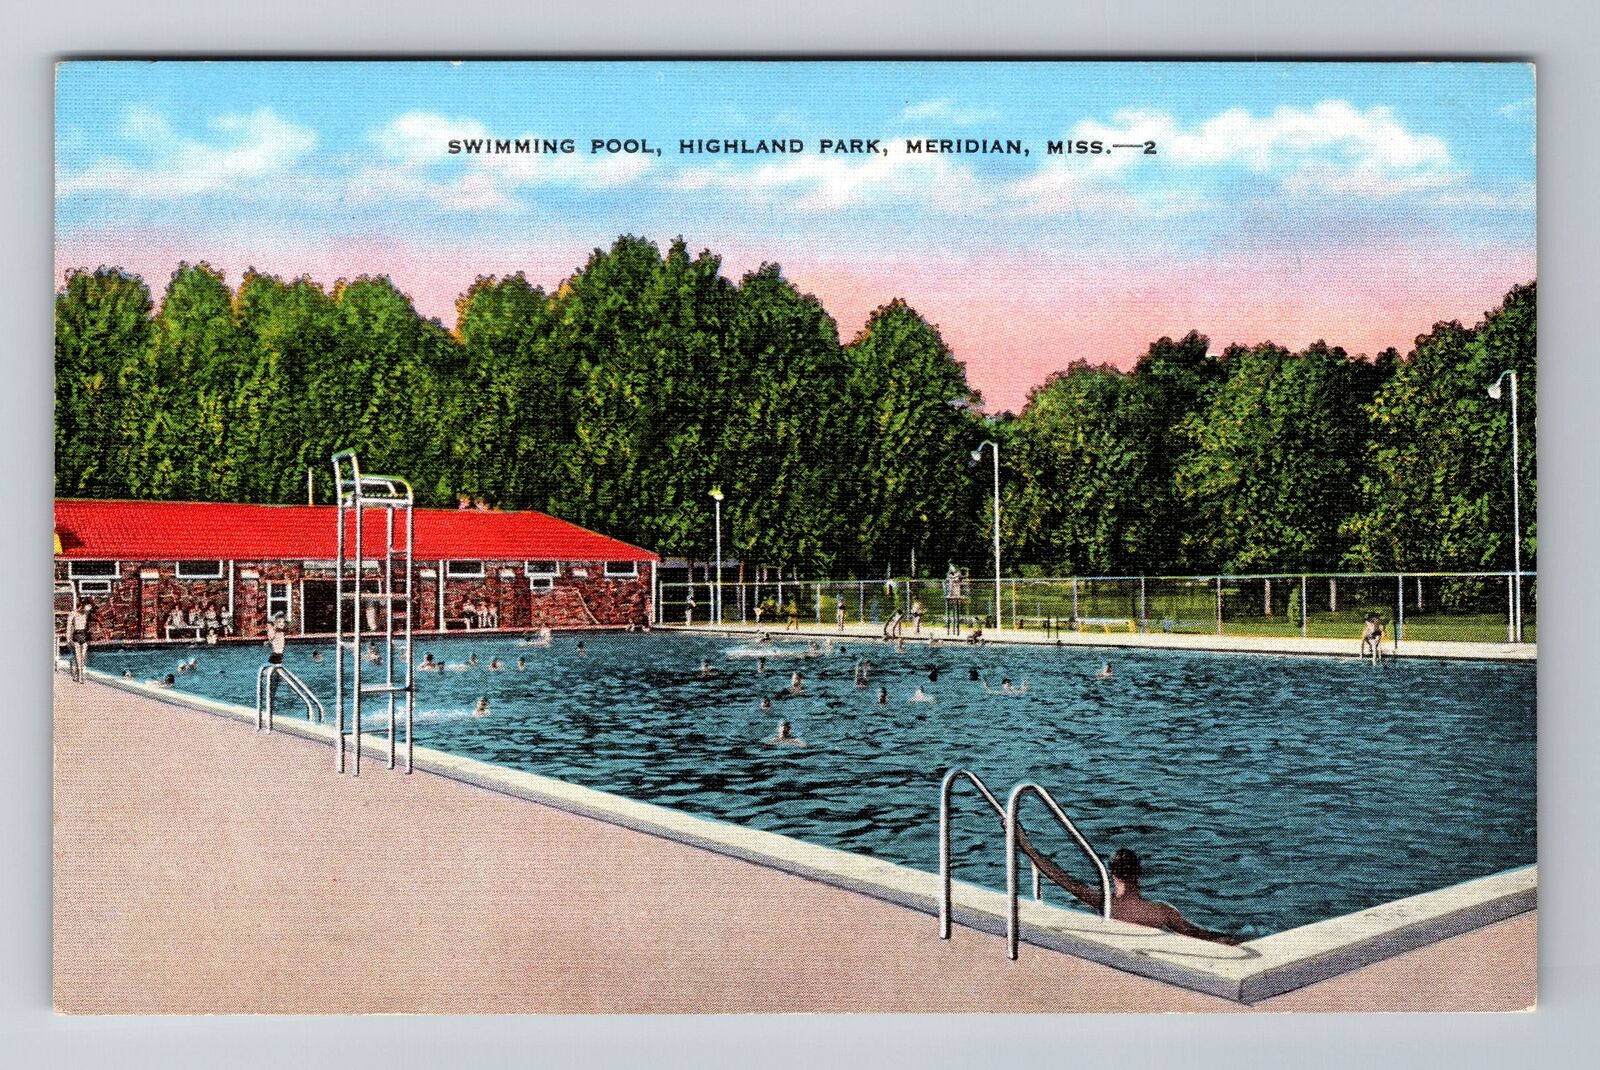 Meridian MS-Mississippi, Highland Park Swimming Pool, Antique Vintage Postcard